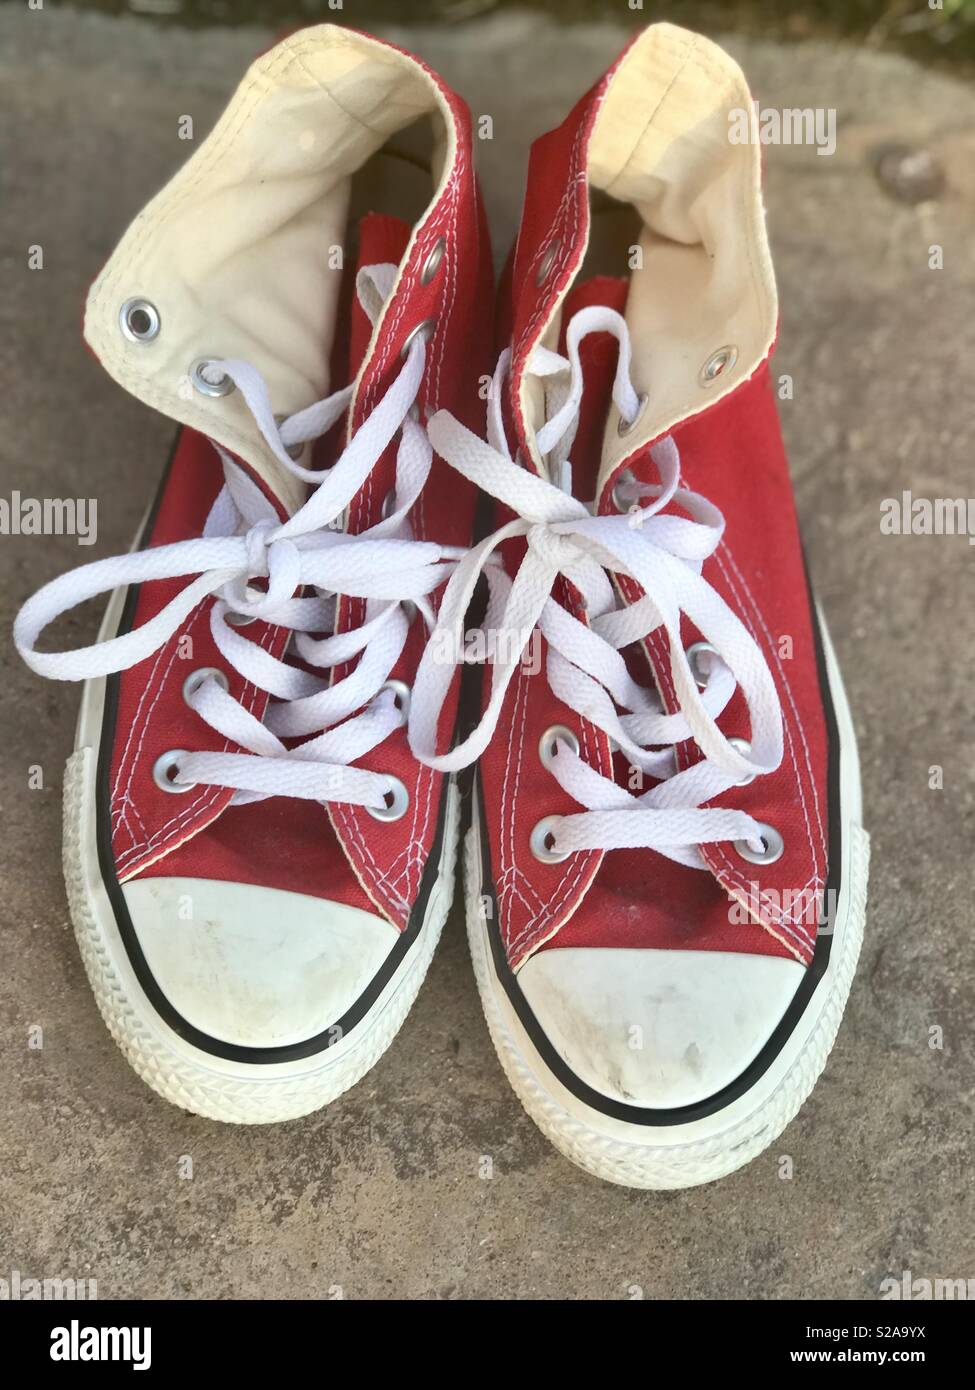 La mode chaussures Converse rouge vif avec lacets blancs Banque D'Images